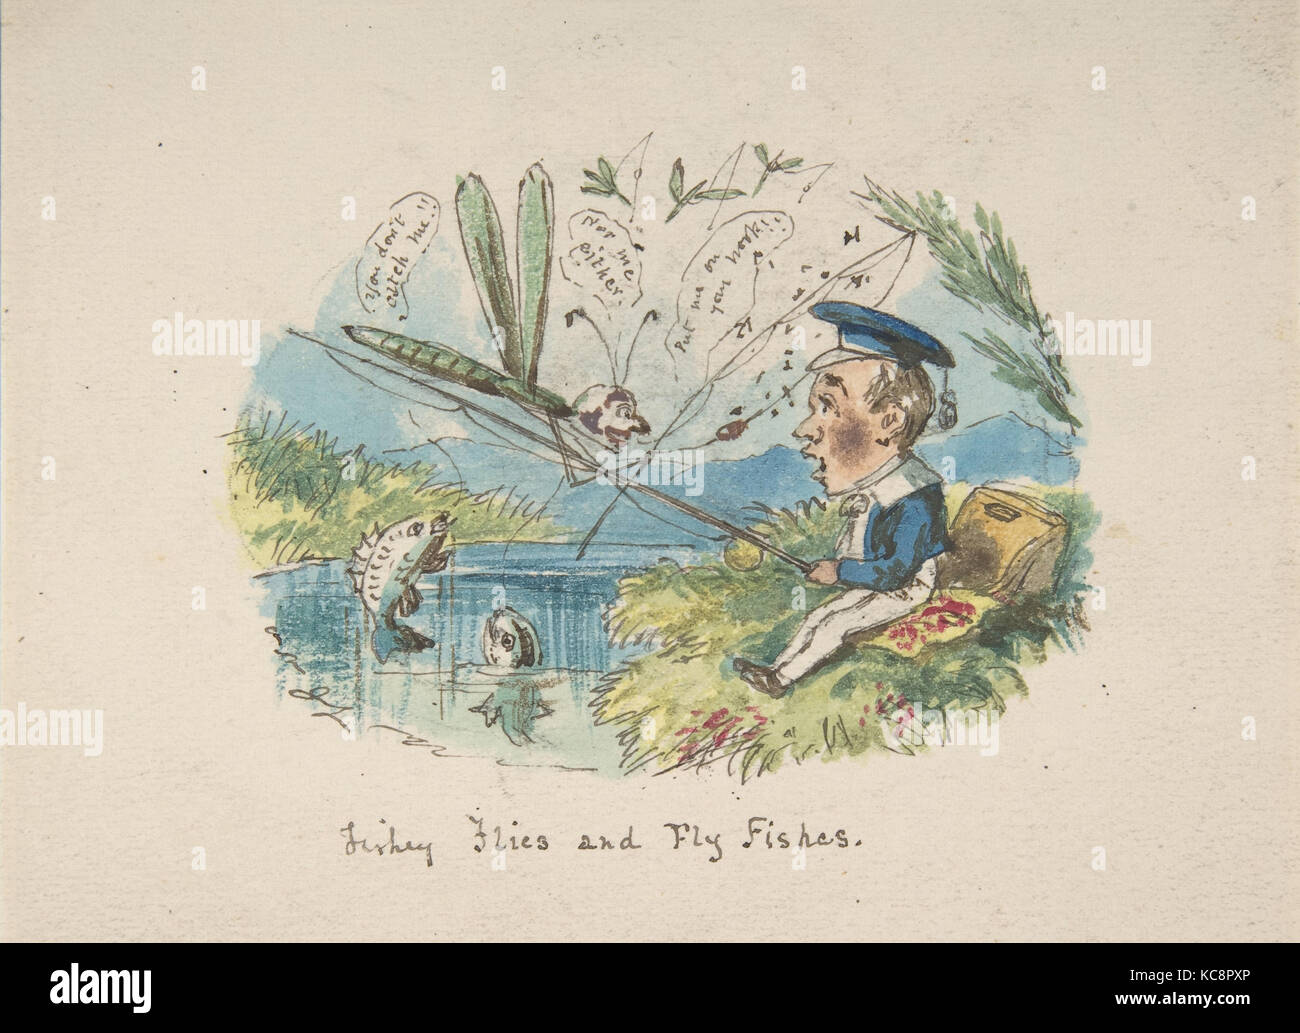 La société Fishey Mouches et voler des poissons (recto) ; Dessins de caractères (verso), John Leech, 1837-1999 Banque D'Images